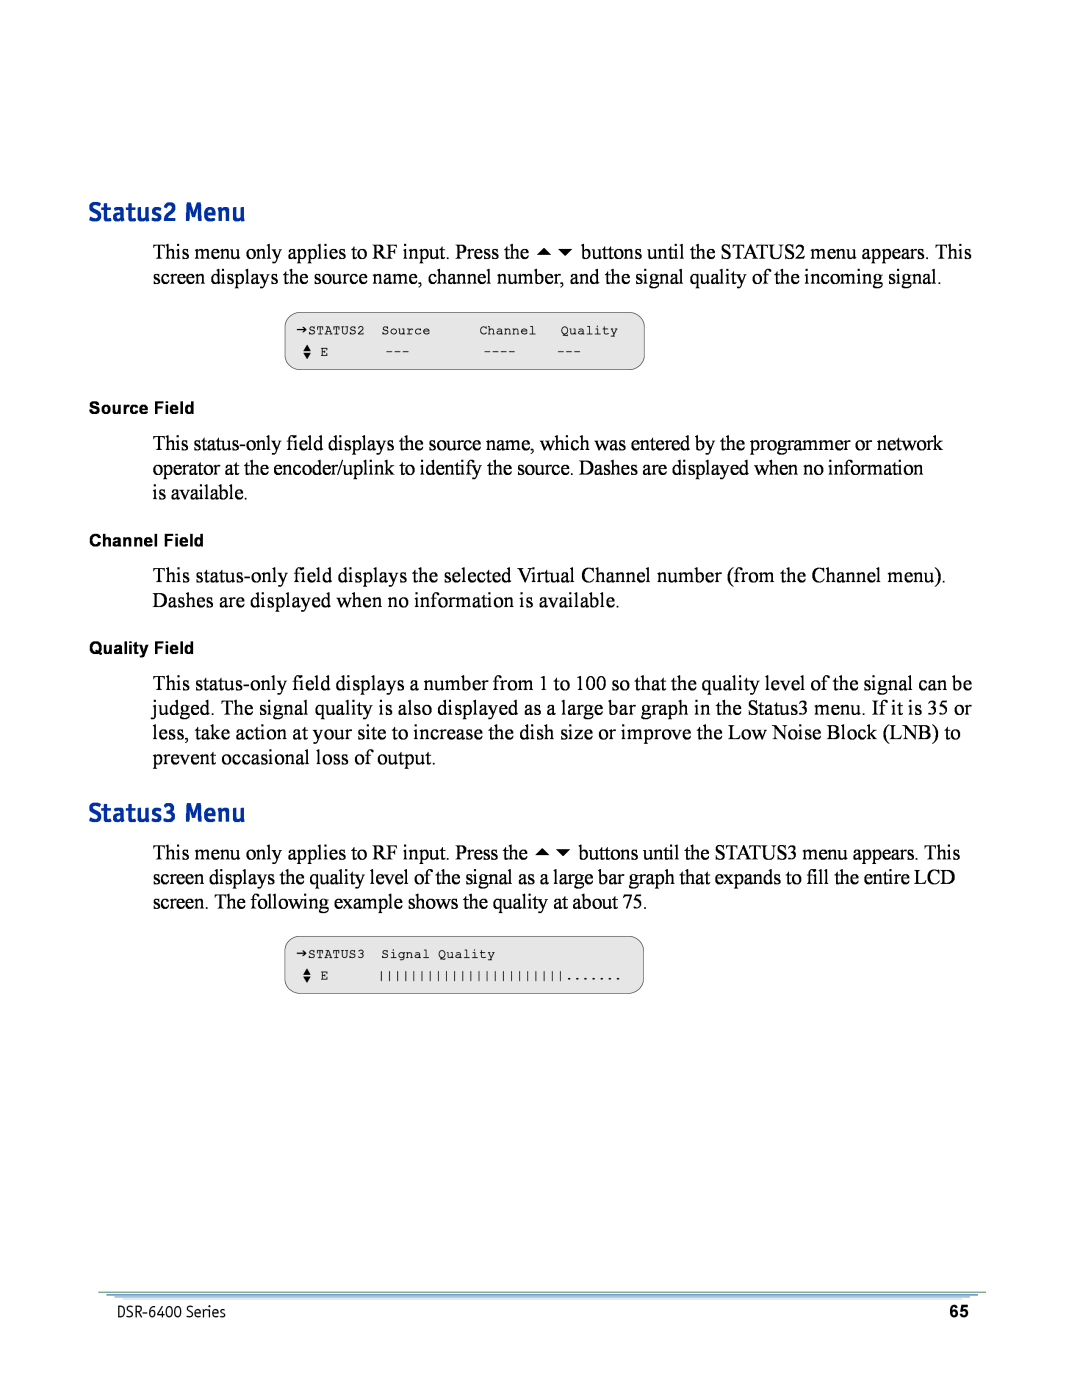 Motorola DSR-6400 manual Status2 Menu, Status3 Menu, Source Field, Channel Field, Quality Field 